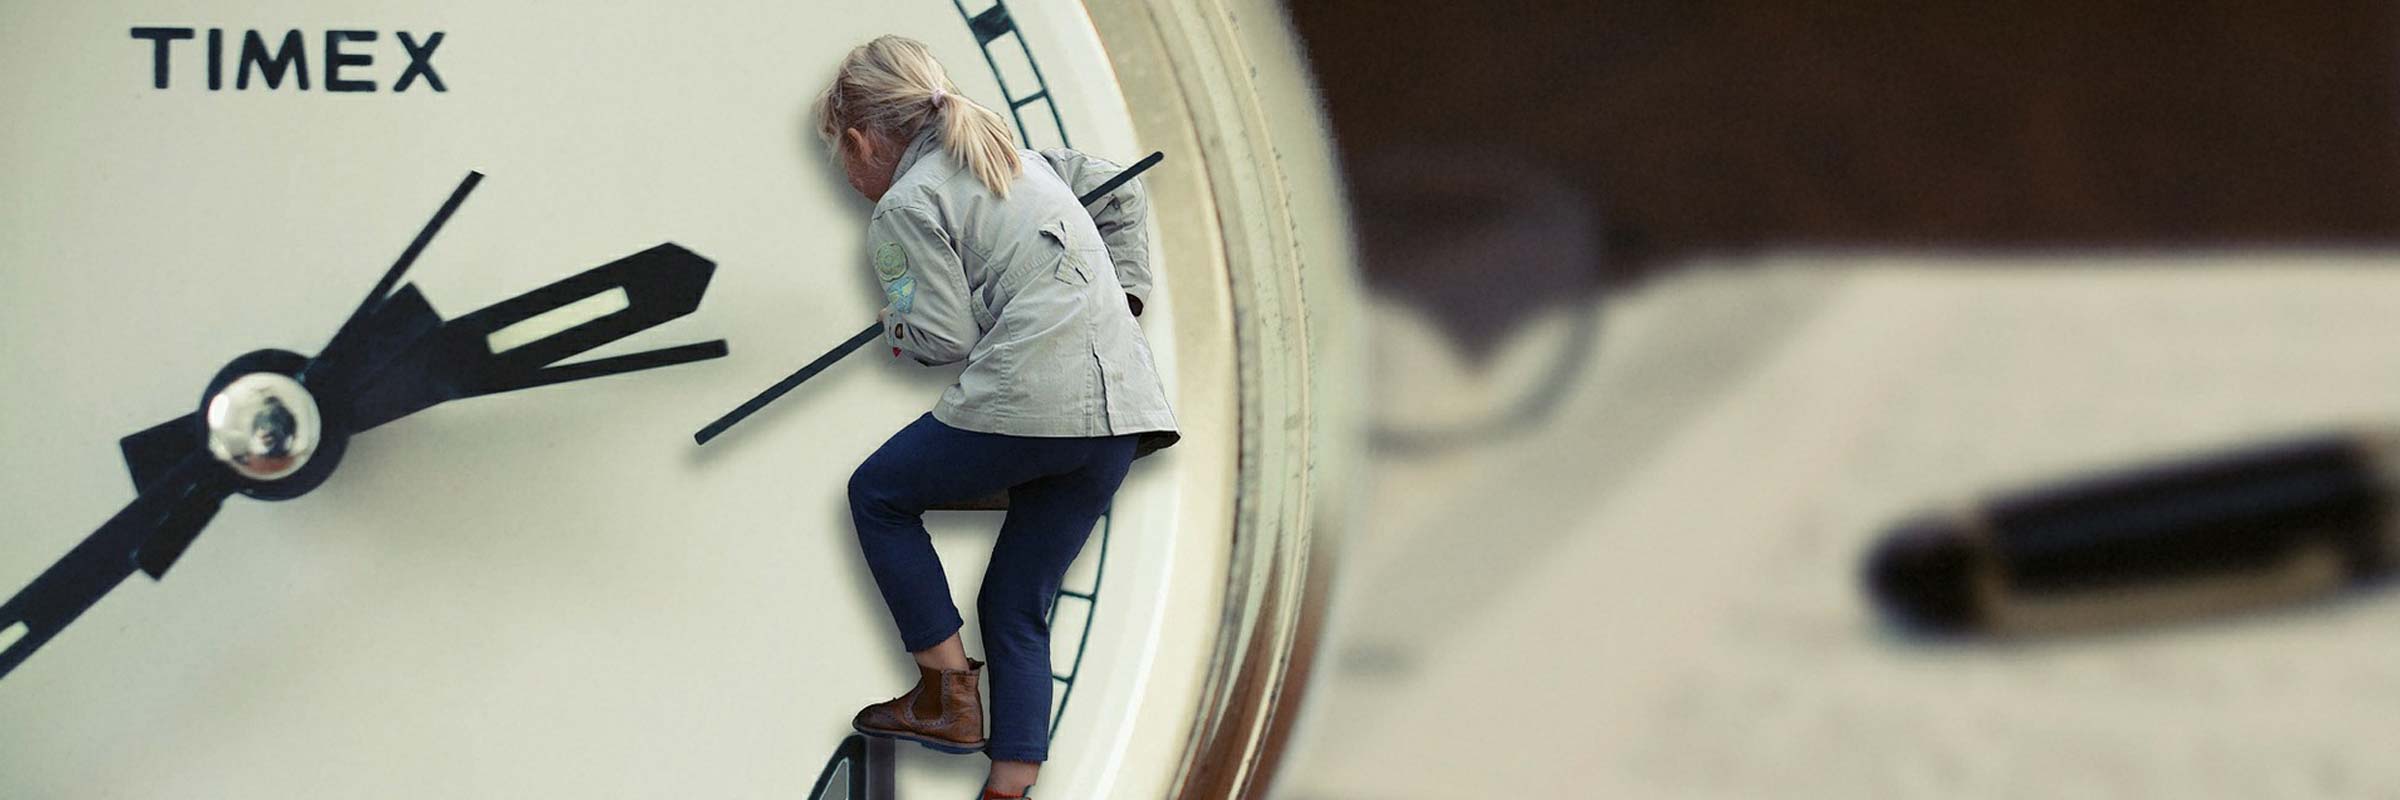 kleines Kind klettert auf den Zeigern einer Uhr rum